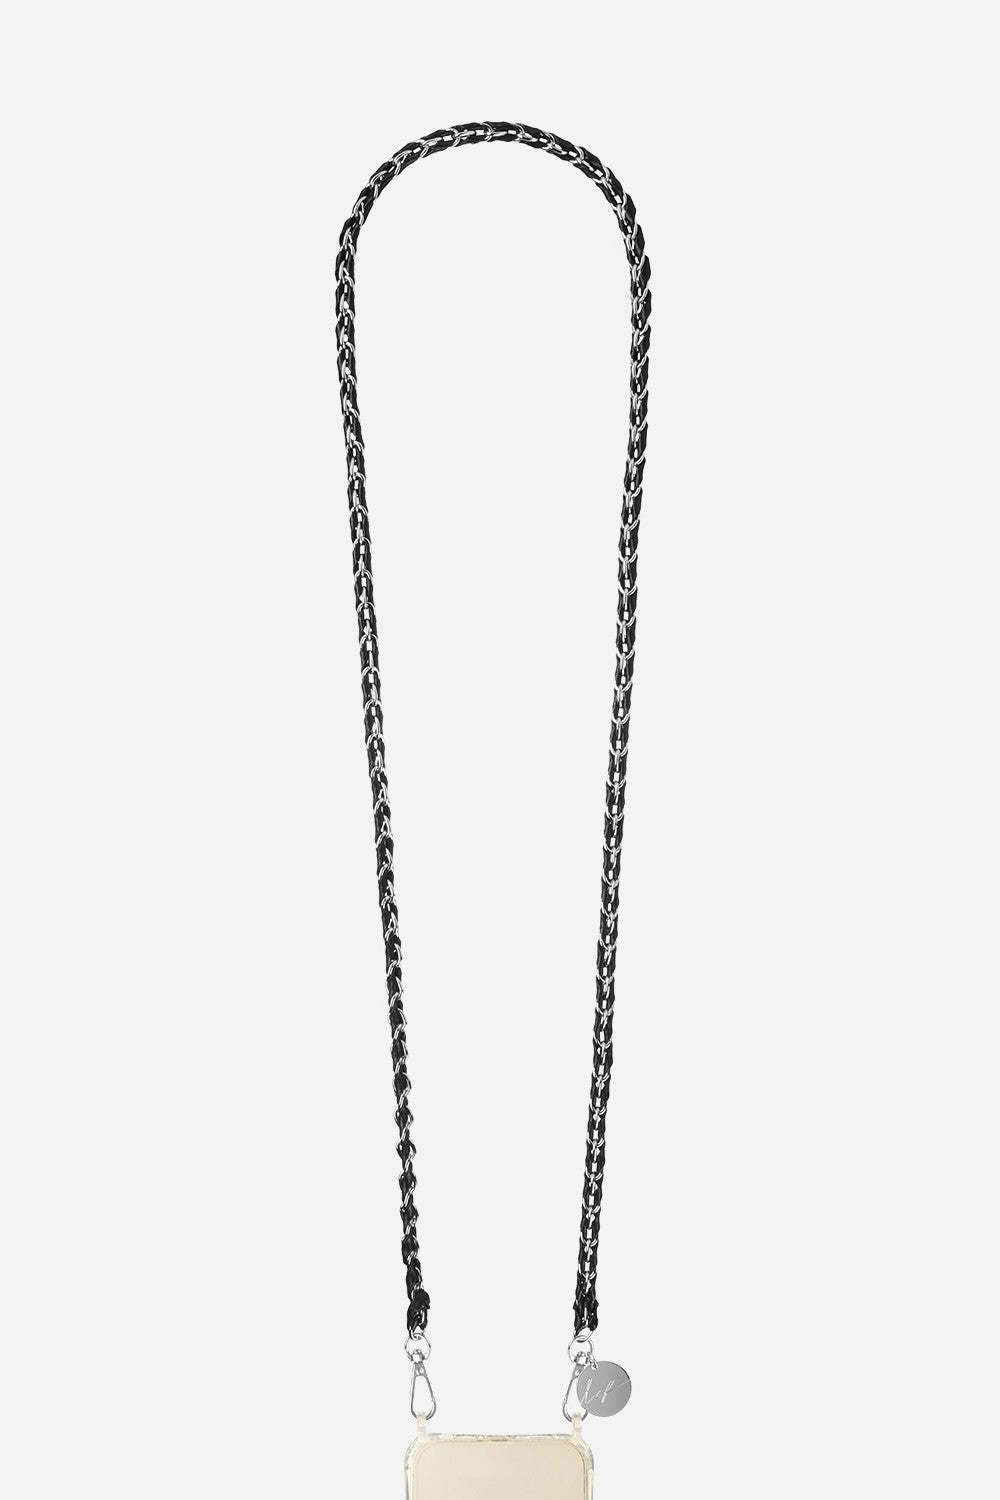 Long Lou Chain Black 120 cm